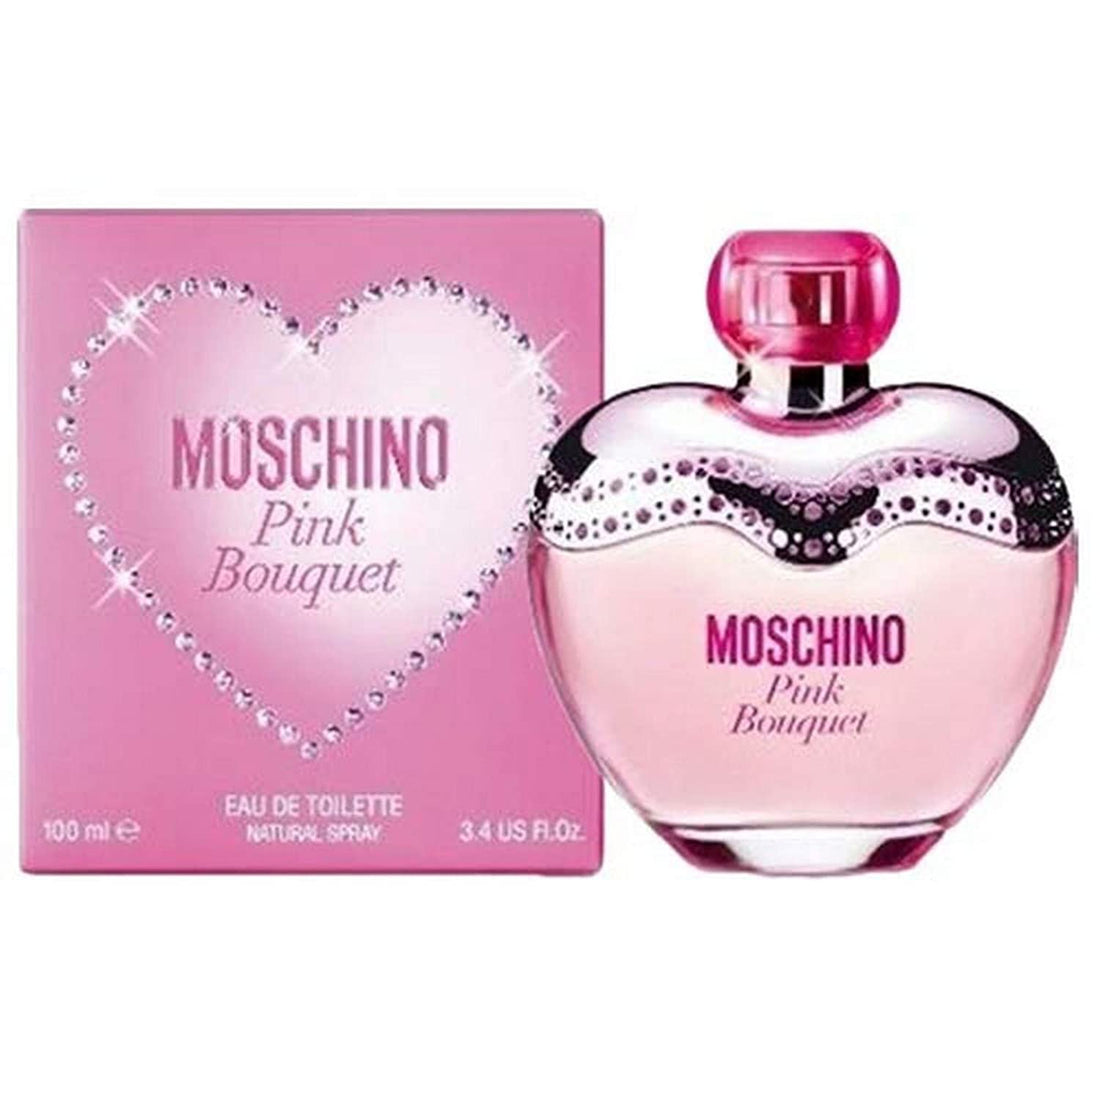 Moschino Pink Bouquet 100ml EDT Spray